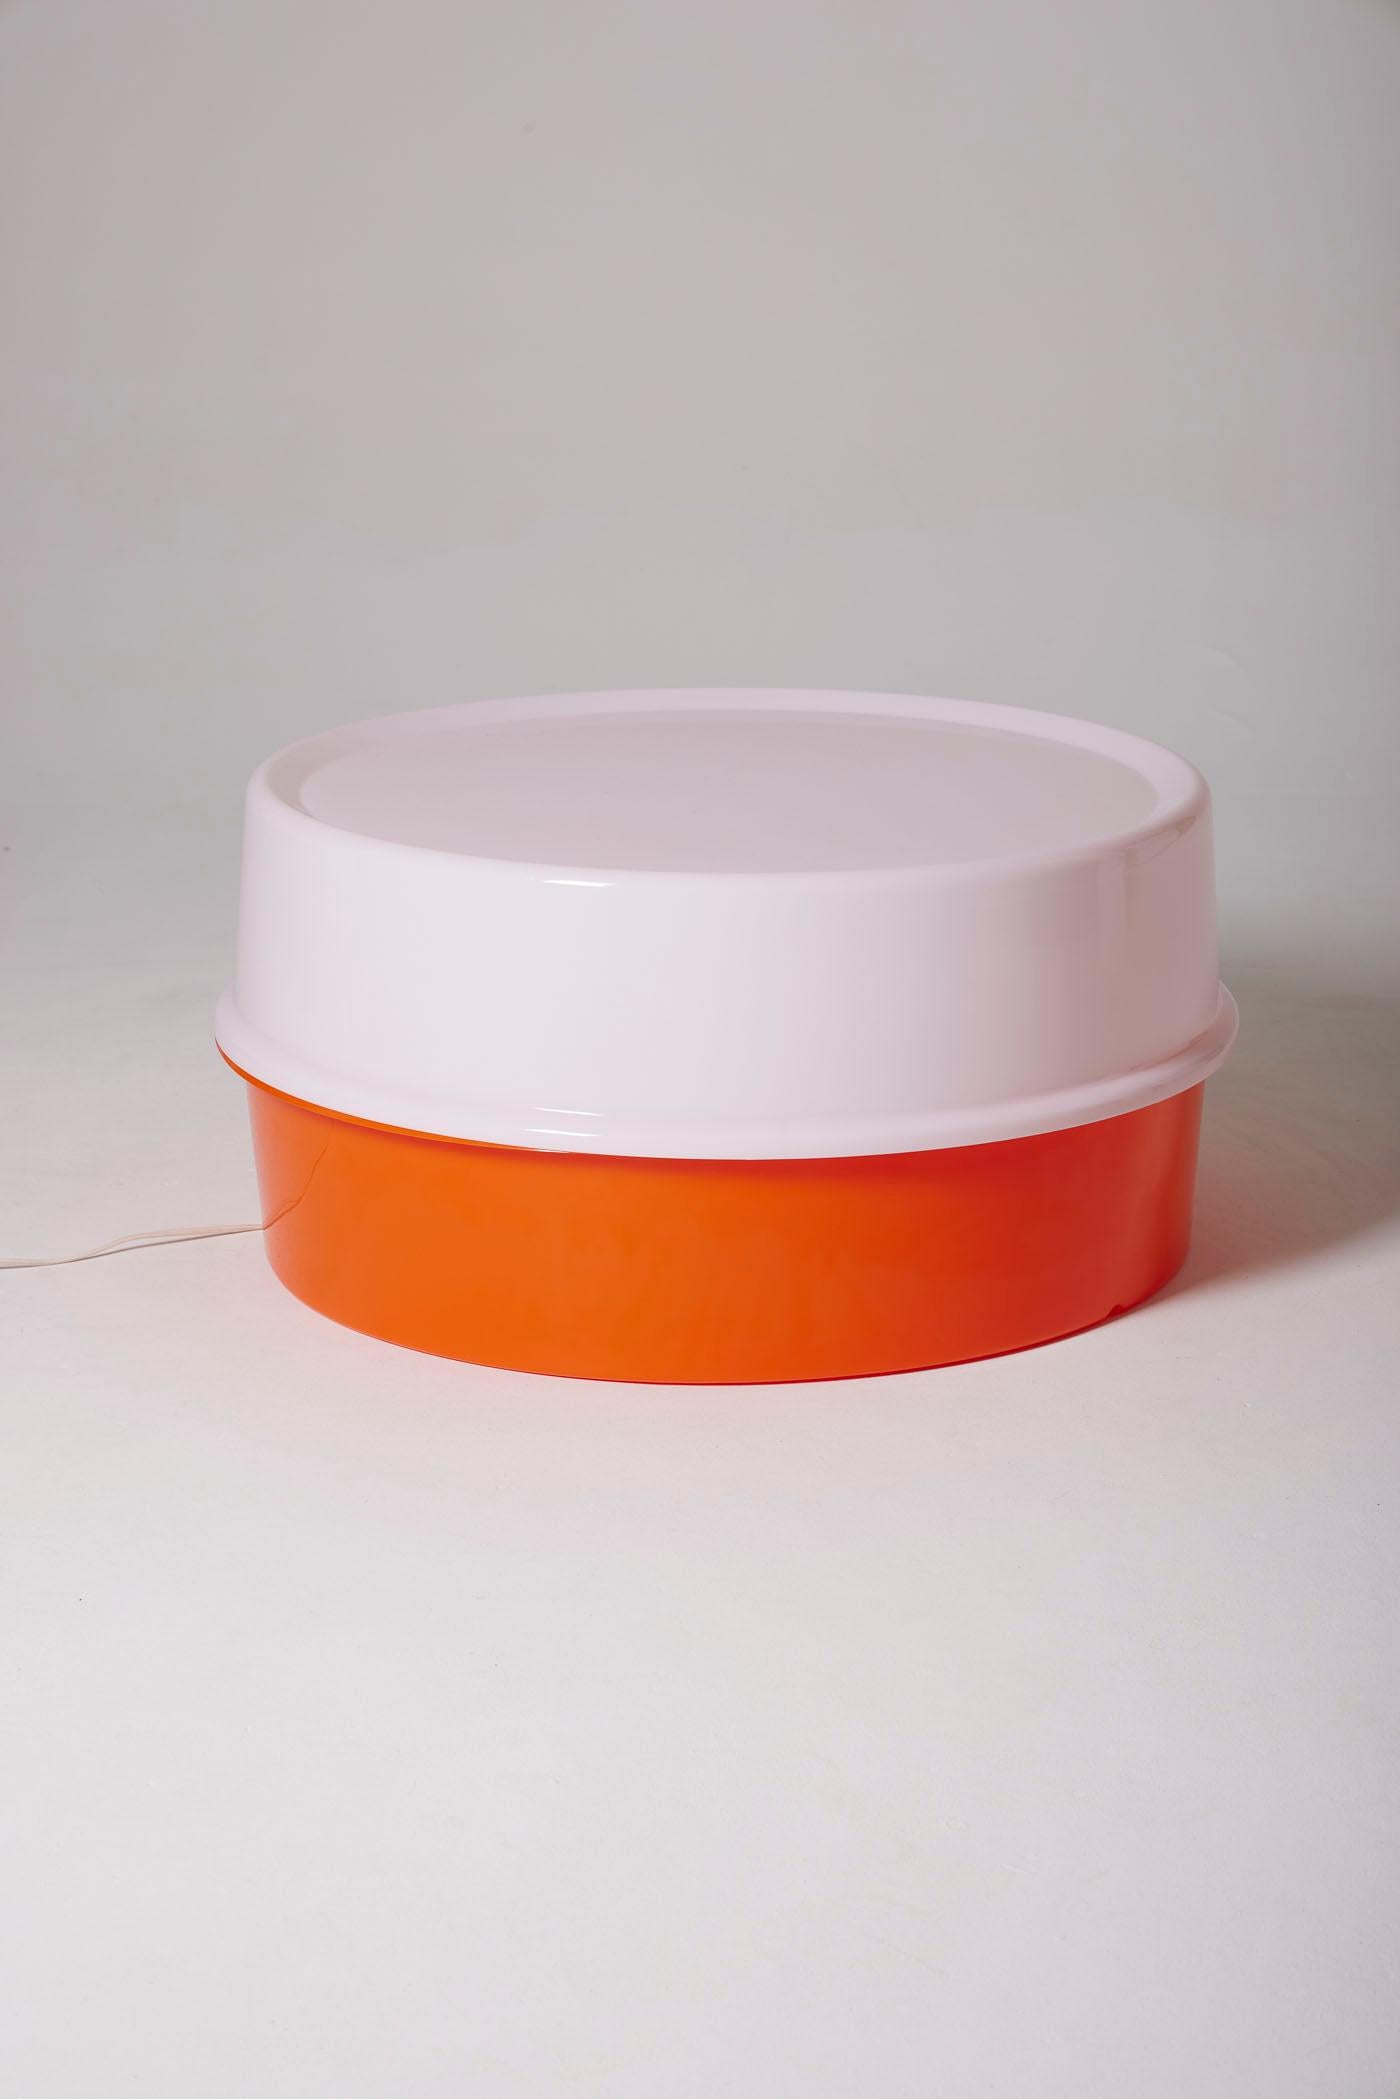 Table basse lumineuse Ilumesa conçue par Verner Panton et produite par Louis Poulsen dans les années 1960. Il se compose de deux blocs emboîtables en polymère orange et blanc. Convient pour une utilisation à l'intérieur et à l'extérieur. En parfait